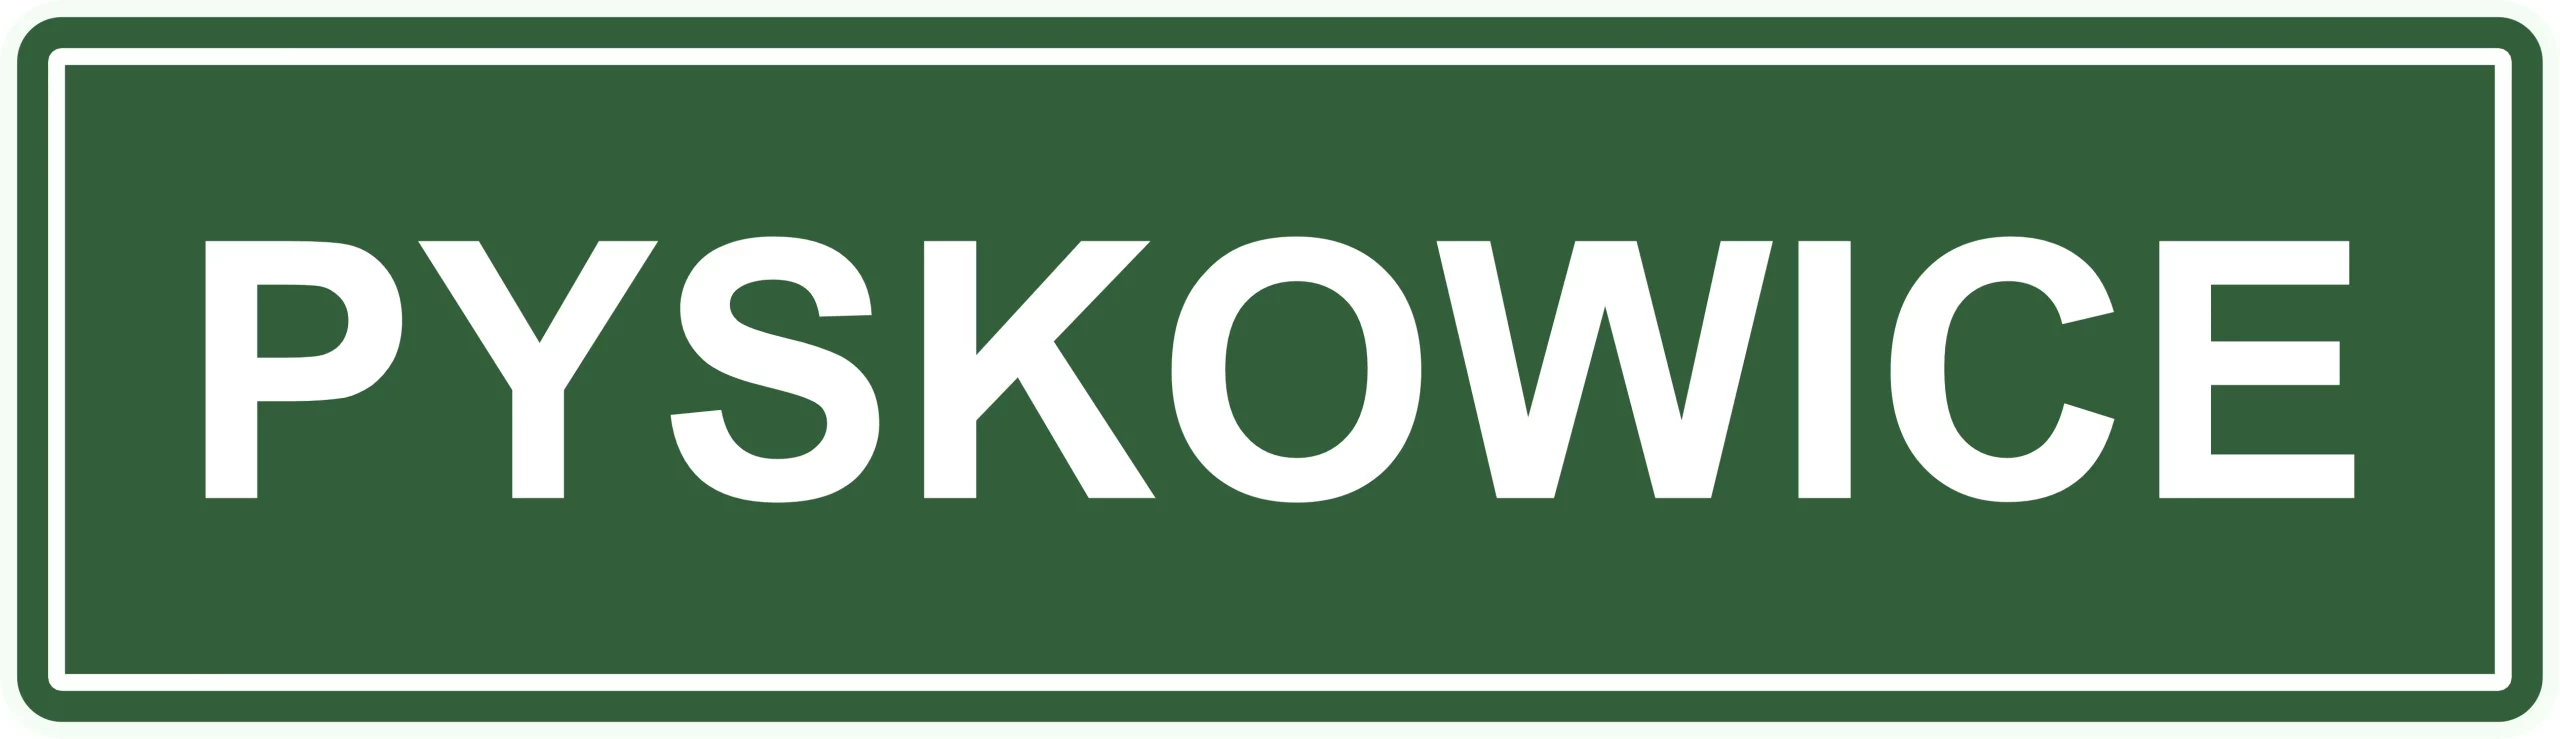 Prawo jazdy Gliwice, Pyskowice, Zabrze – LEW group